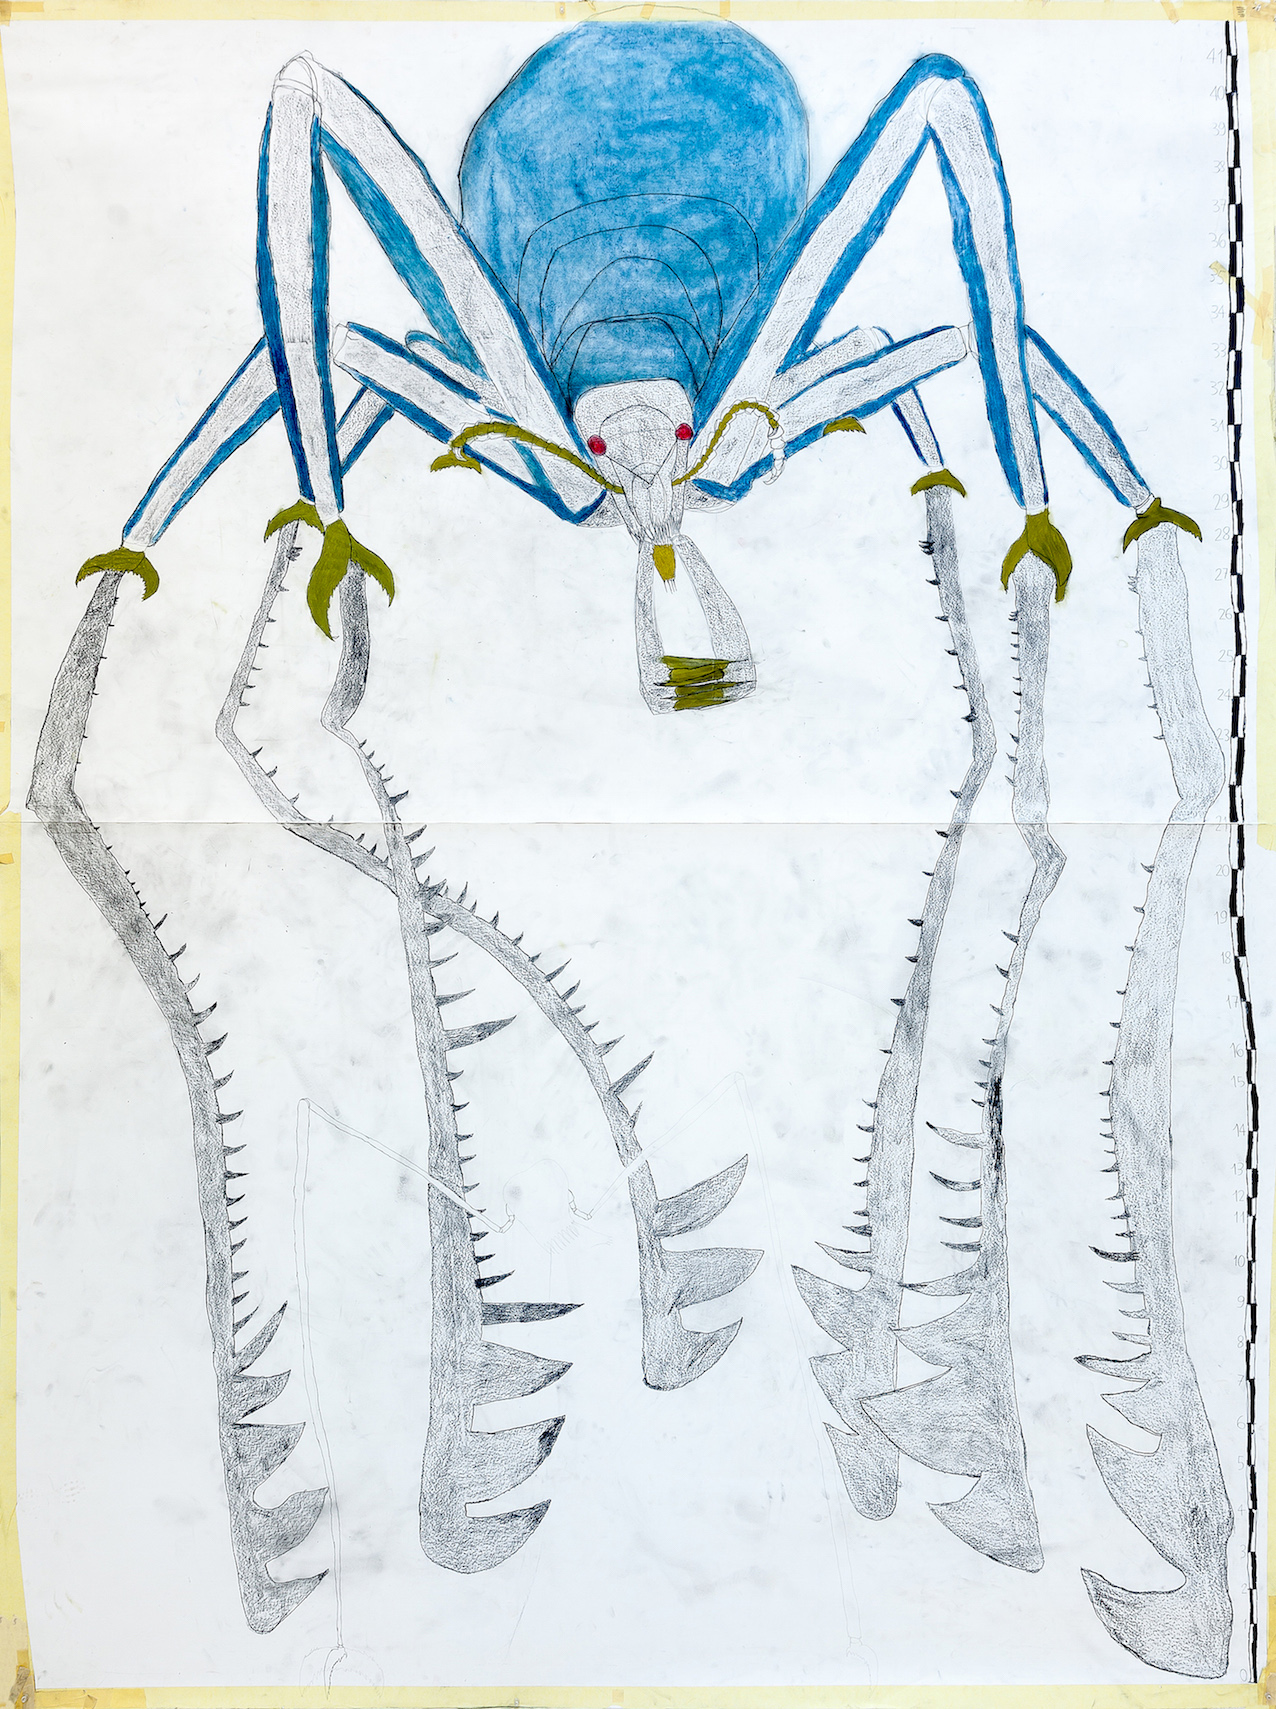 Autori vari, Atelier dell’Errore , L'immane RagnoFerro di Curnasco / The Huge Iron-Spider from Curnasco, 2015. Courtesy: © Atelier dell’Errore.